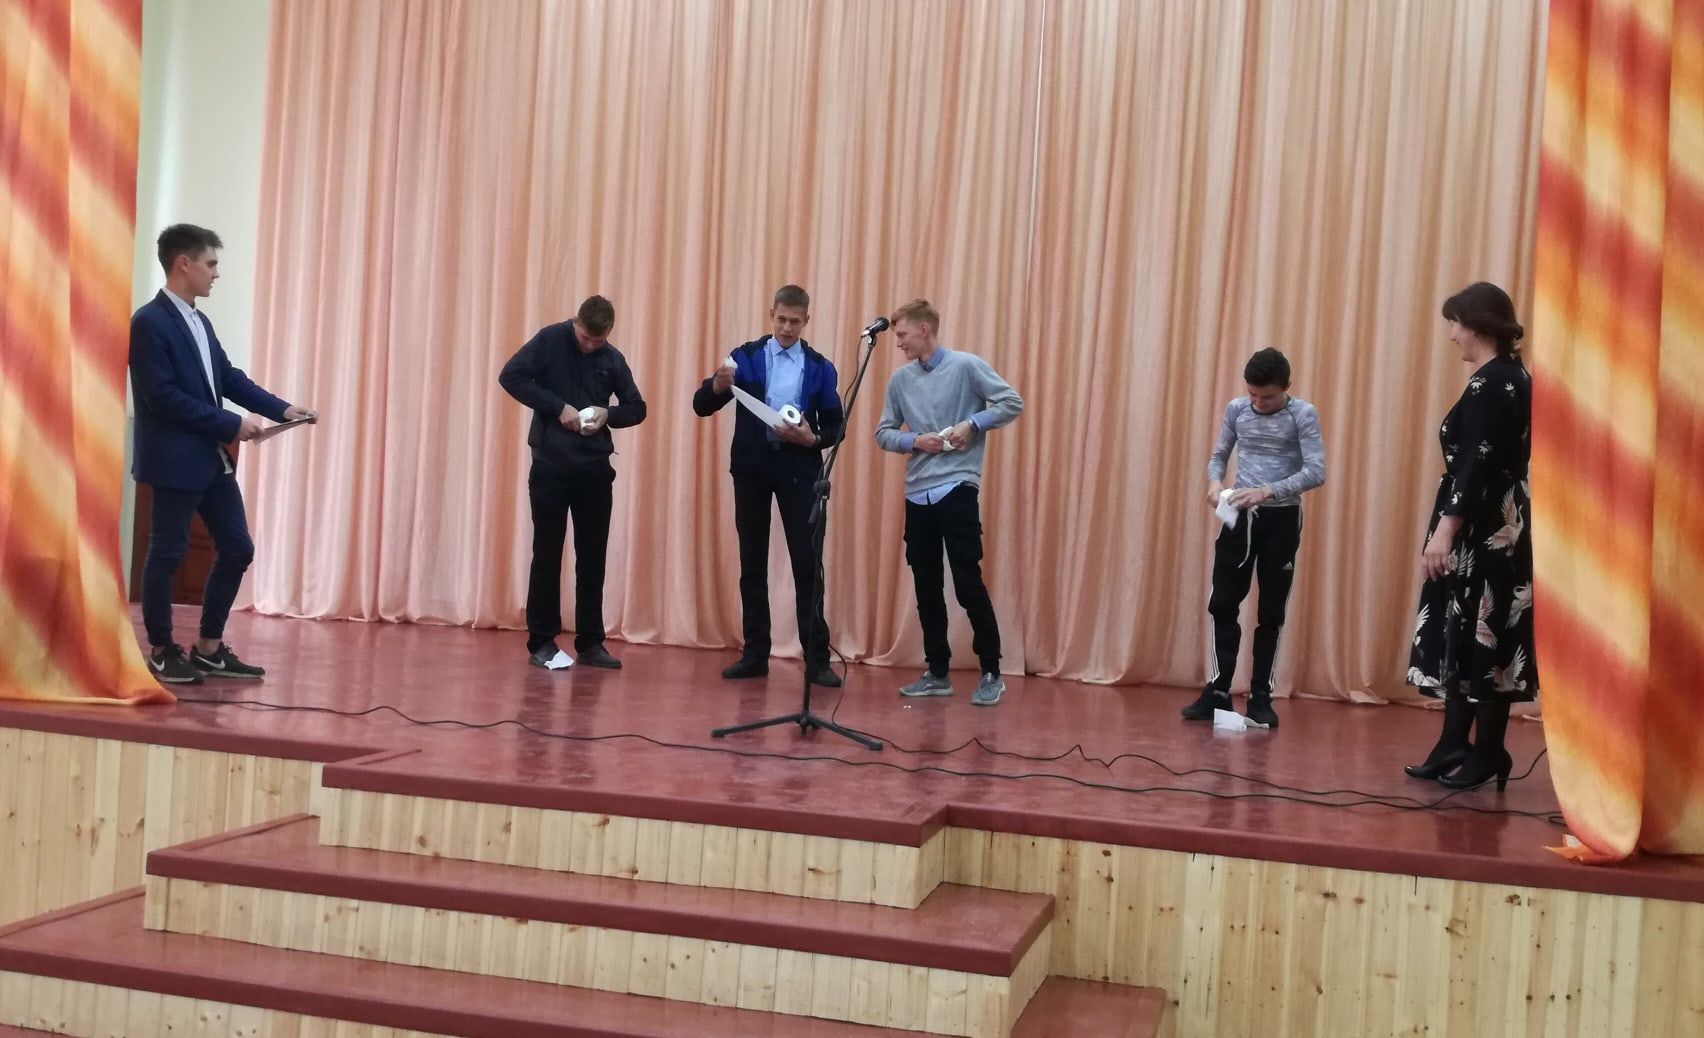 Студентов Агрыза "посвятили" в первокурсники (ФОТО)